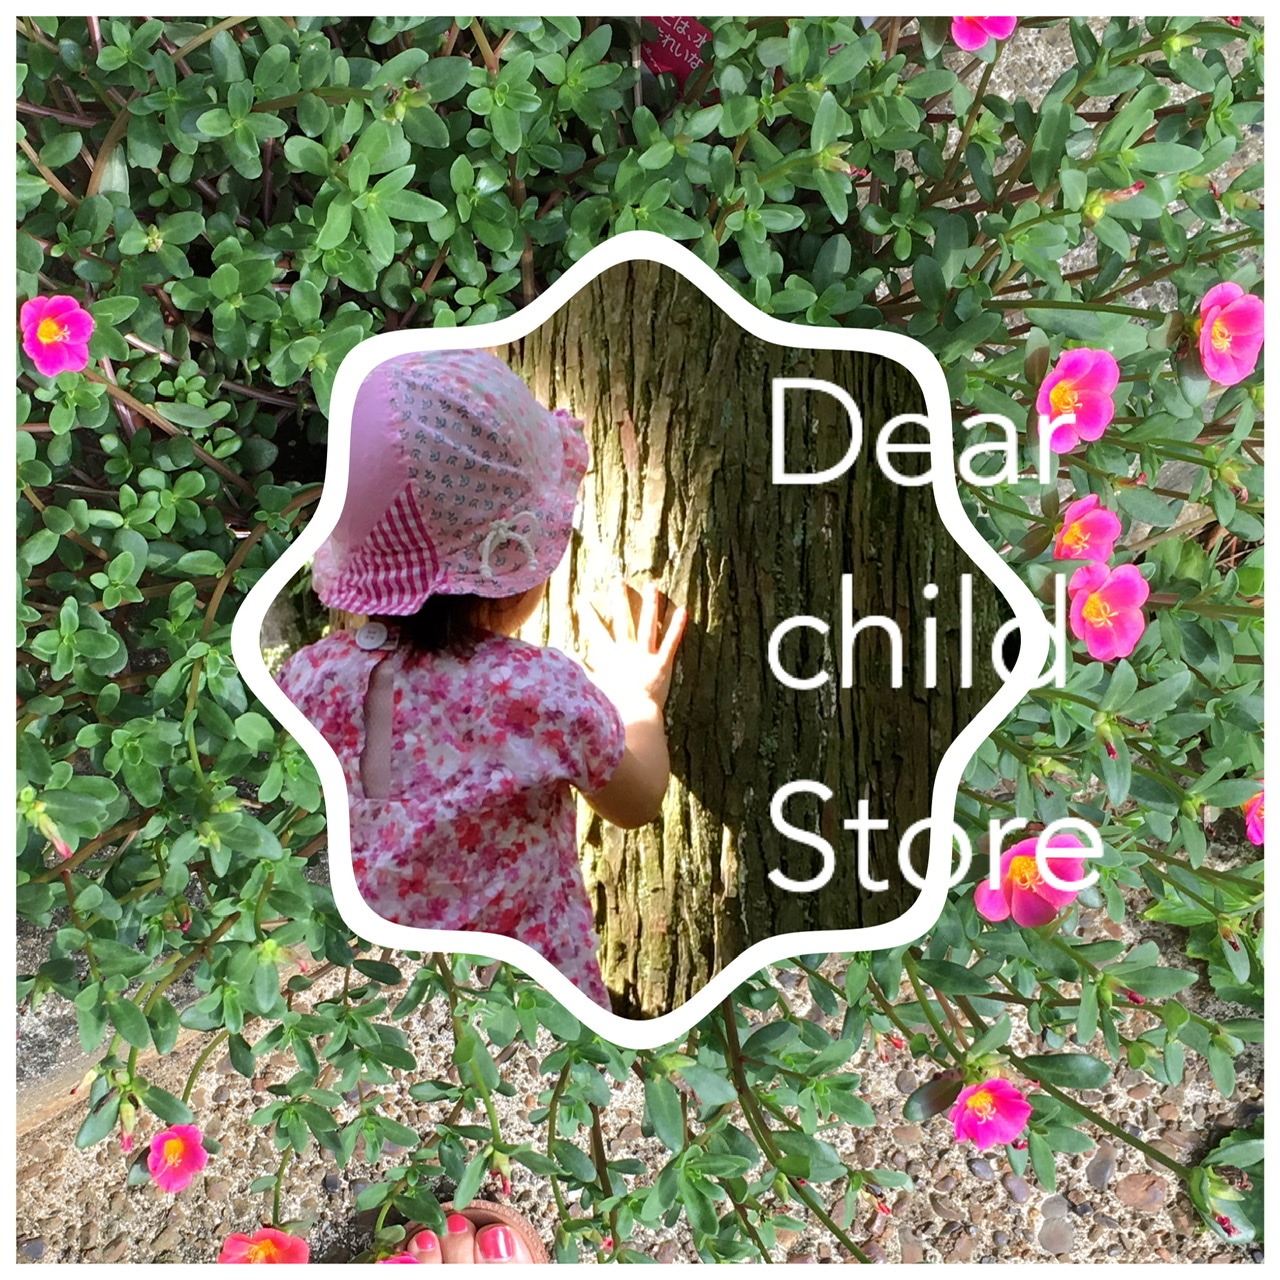 Dear child store